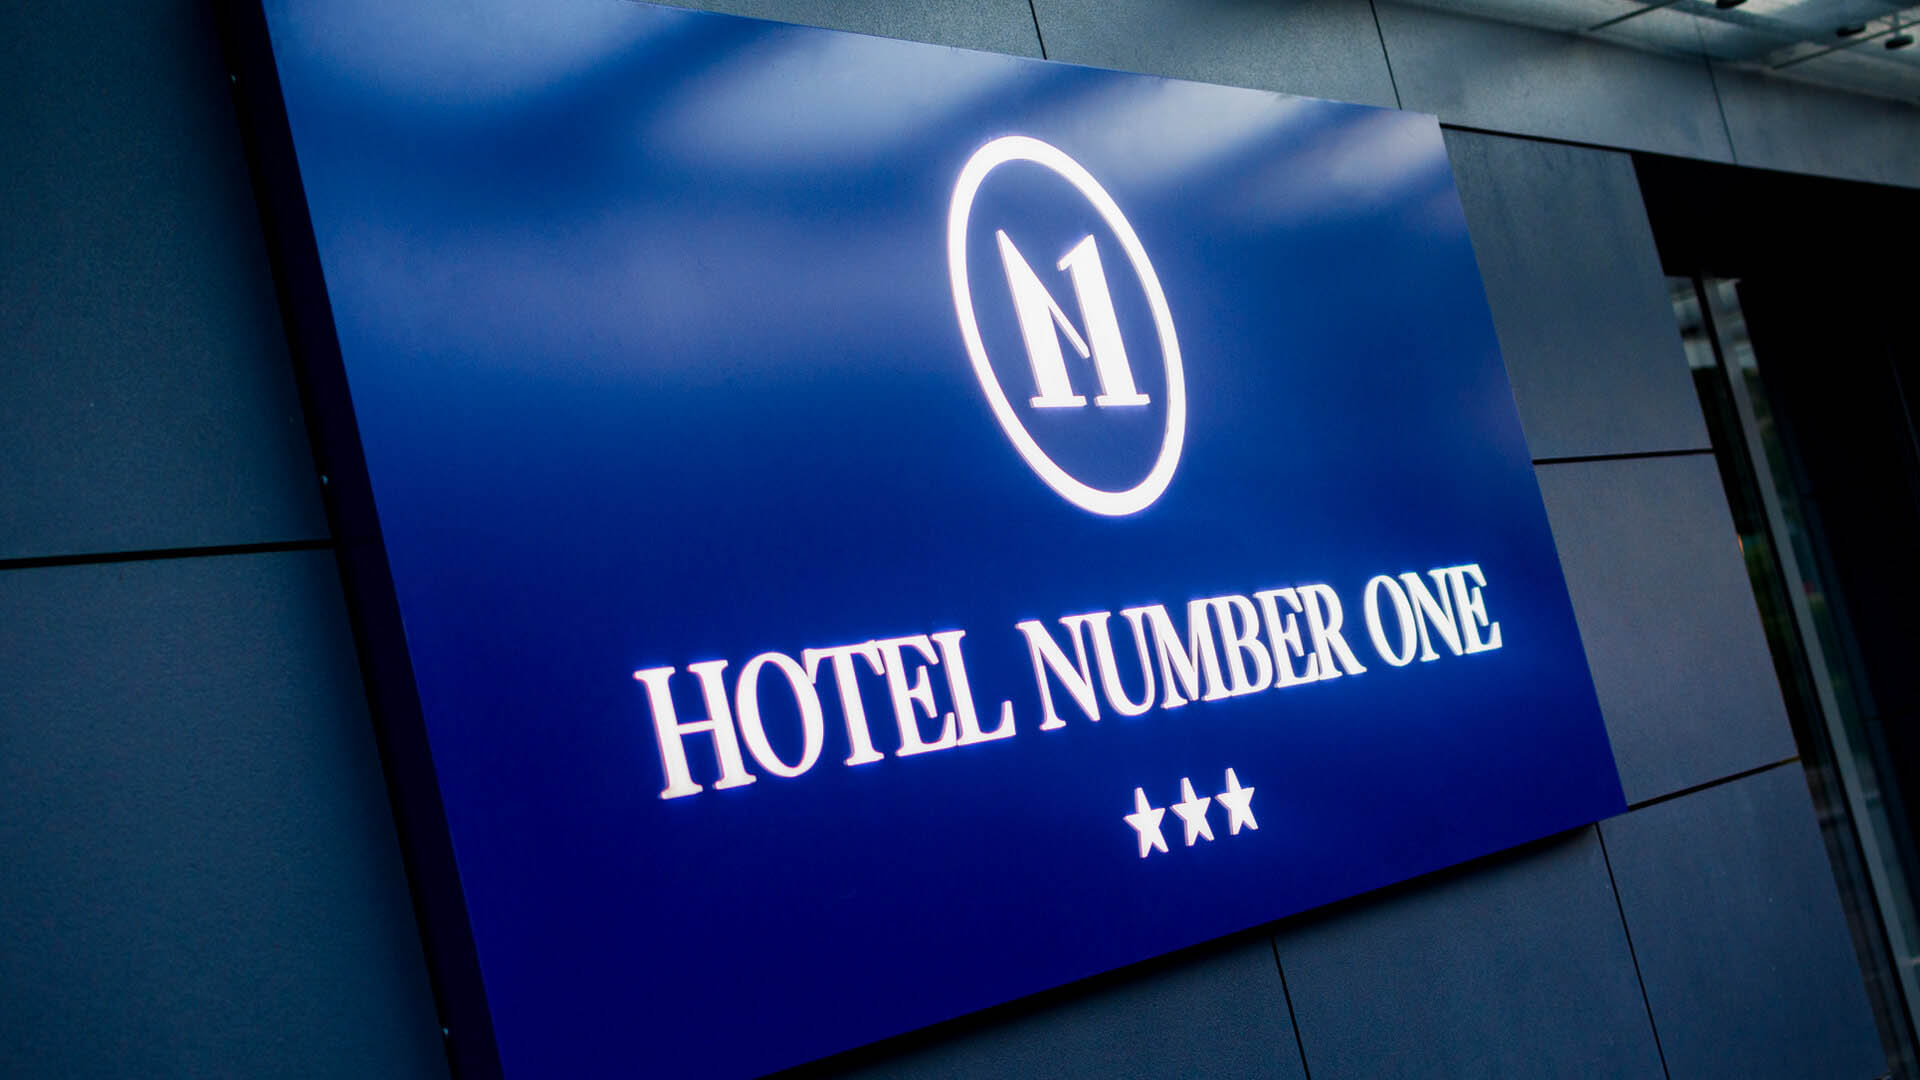 Hotel Number 1 - Hotel Number 1 - litery przestrzenne na kasetonie świetlnym